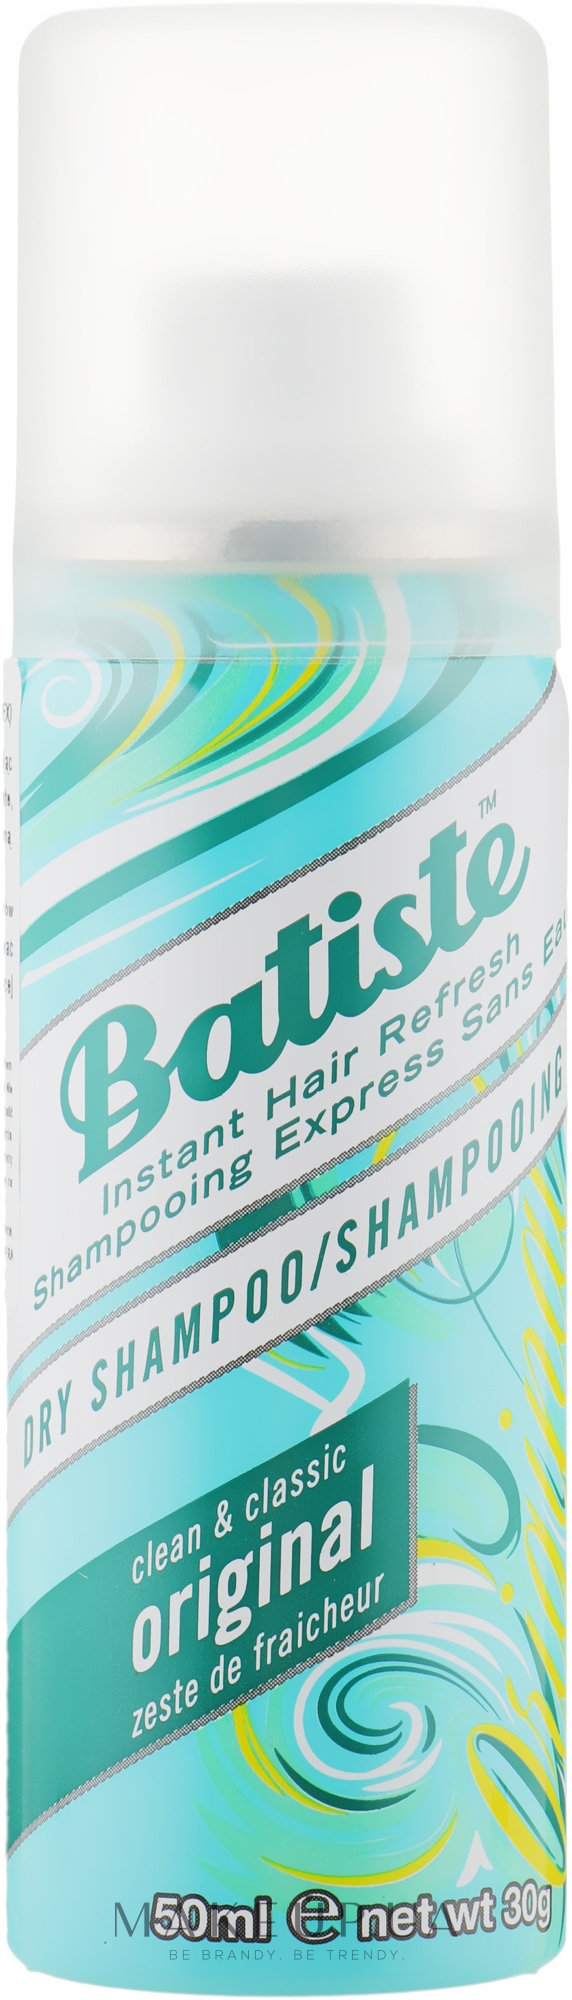 Batiste Dry Shampoo Clean and Classic Original - шампунь: купить по лучшей цене в Украине | Makeup.ua